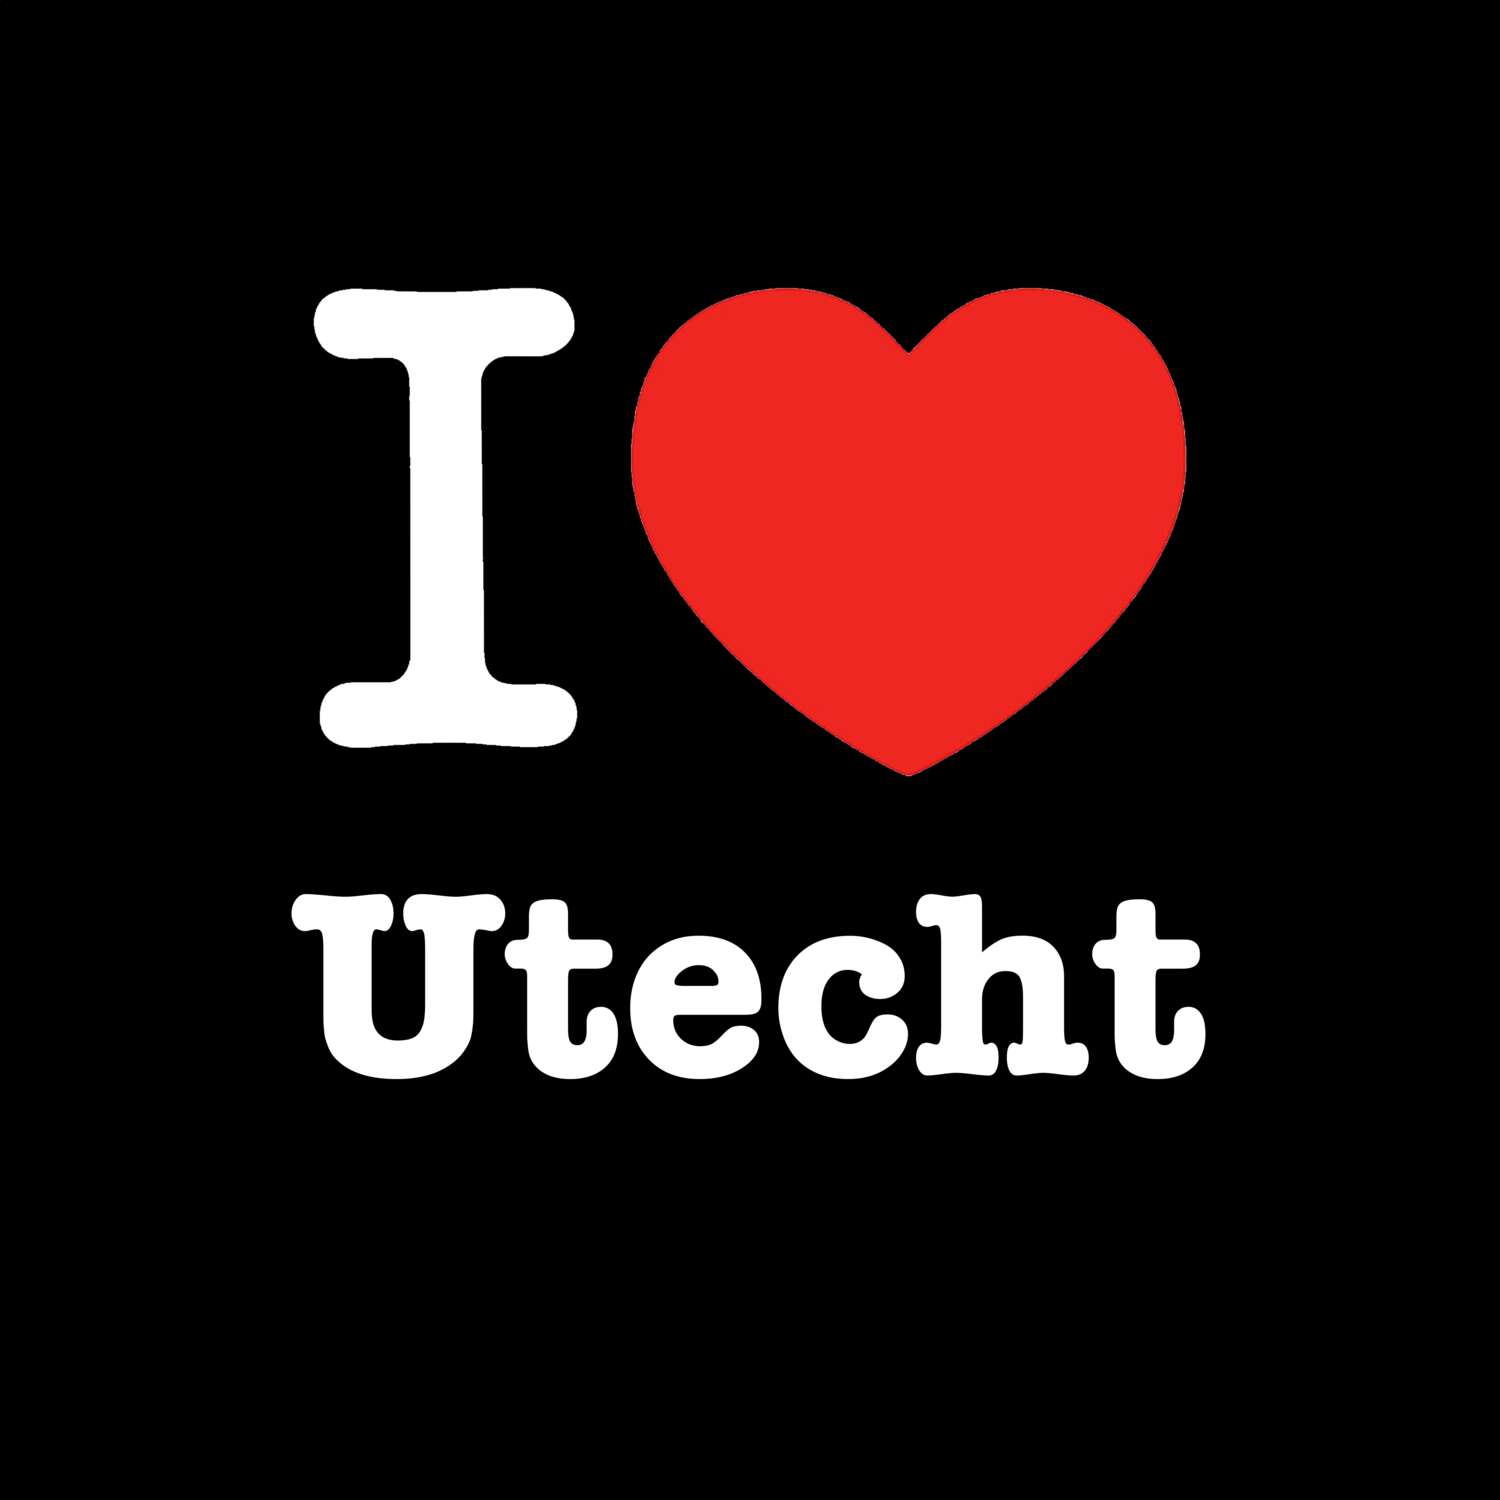 Utecht T-Shirt »I love«